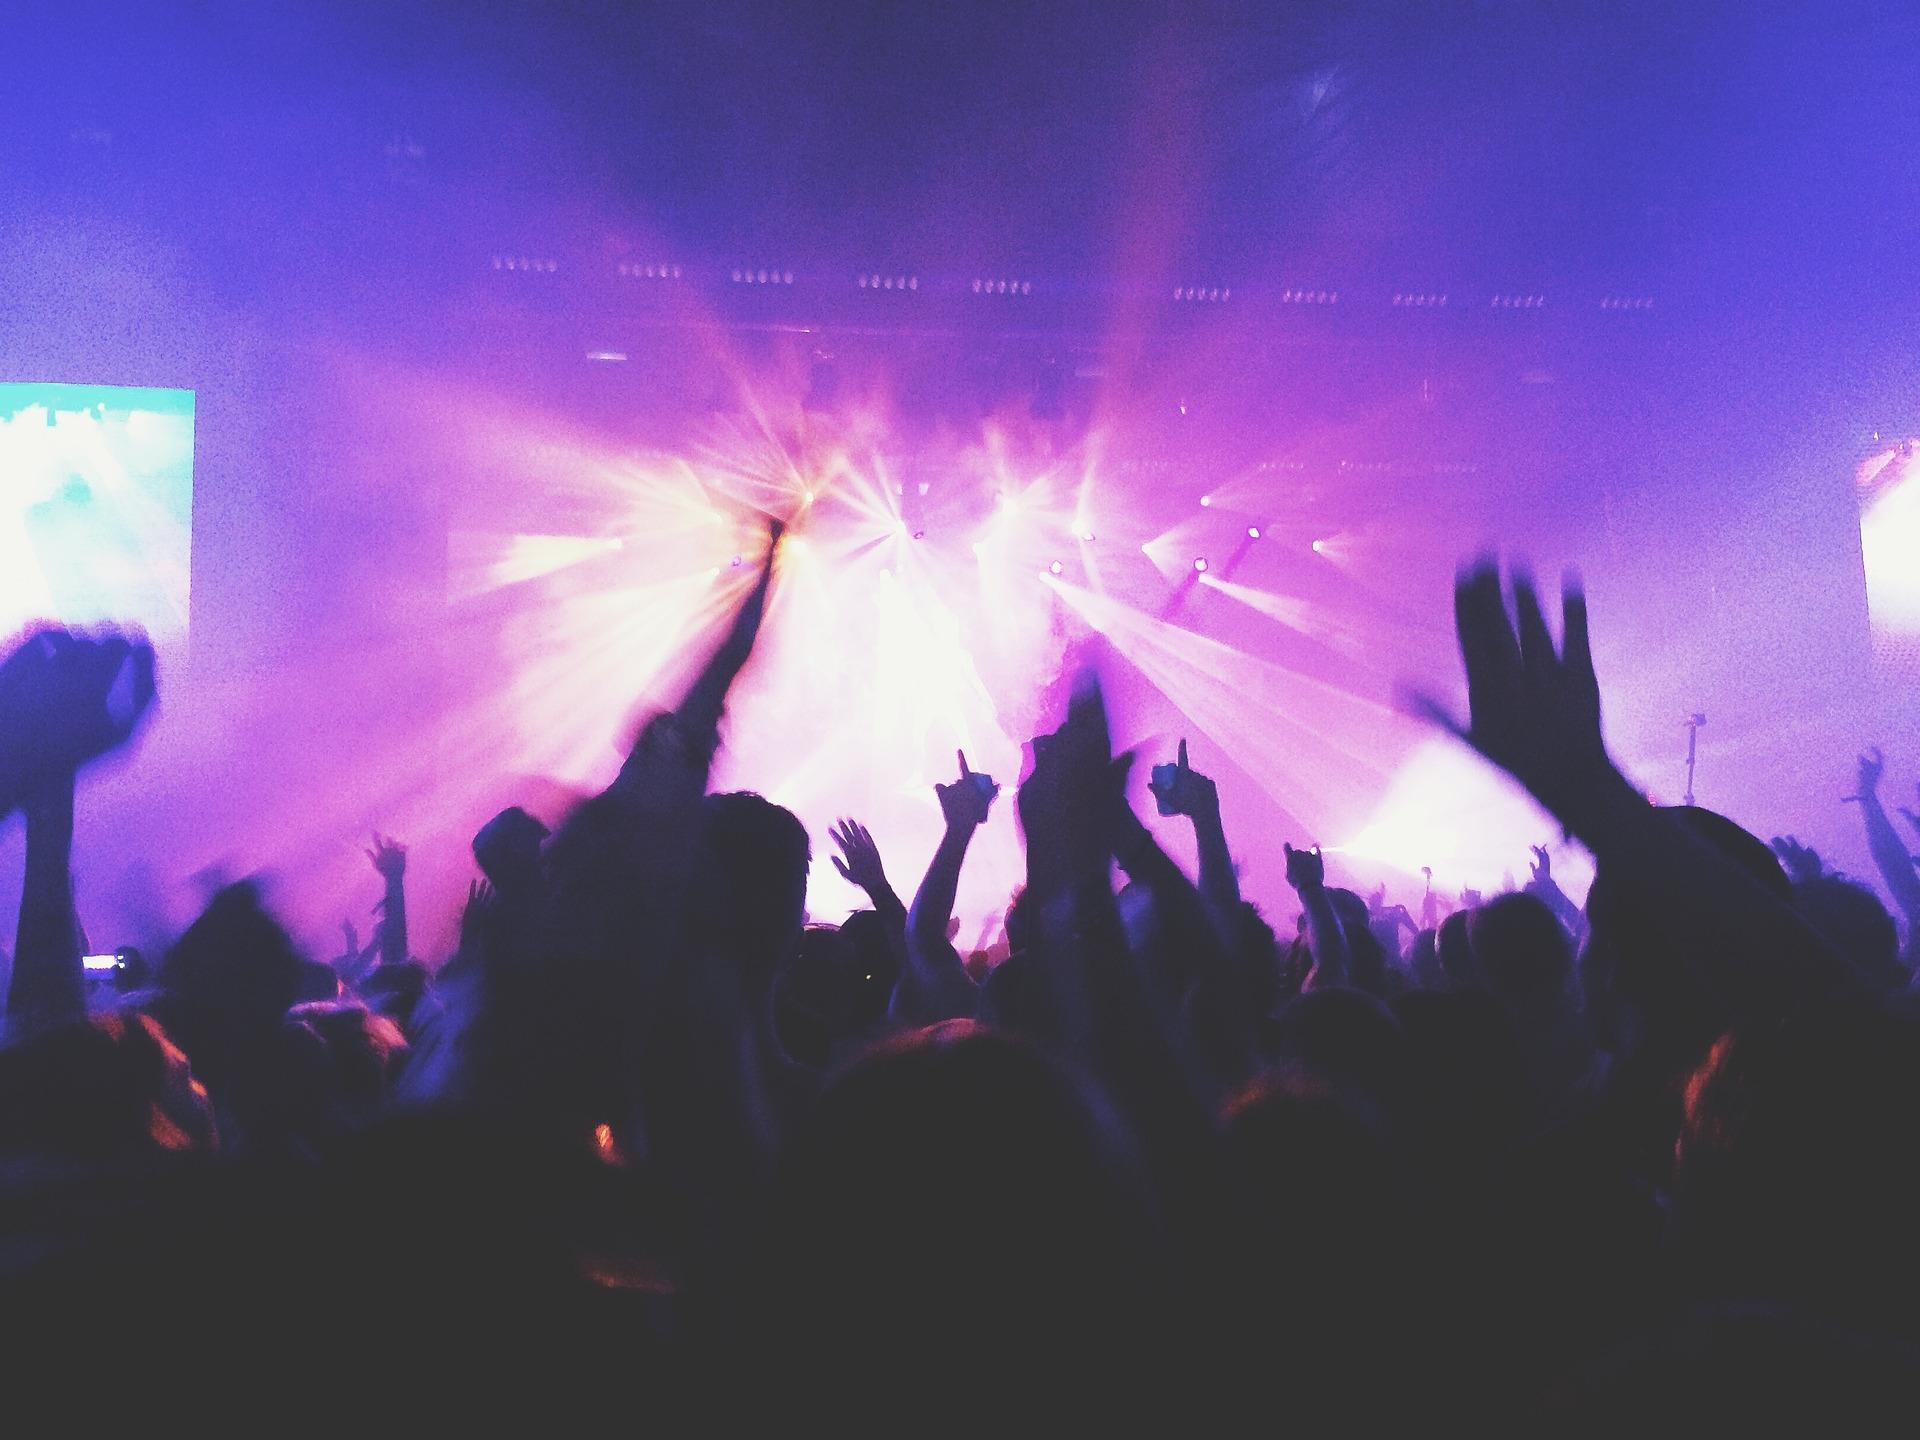 Gente en un concierto de rock. Fuente: Pixabay.